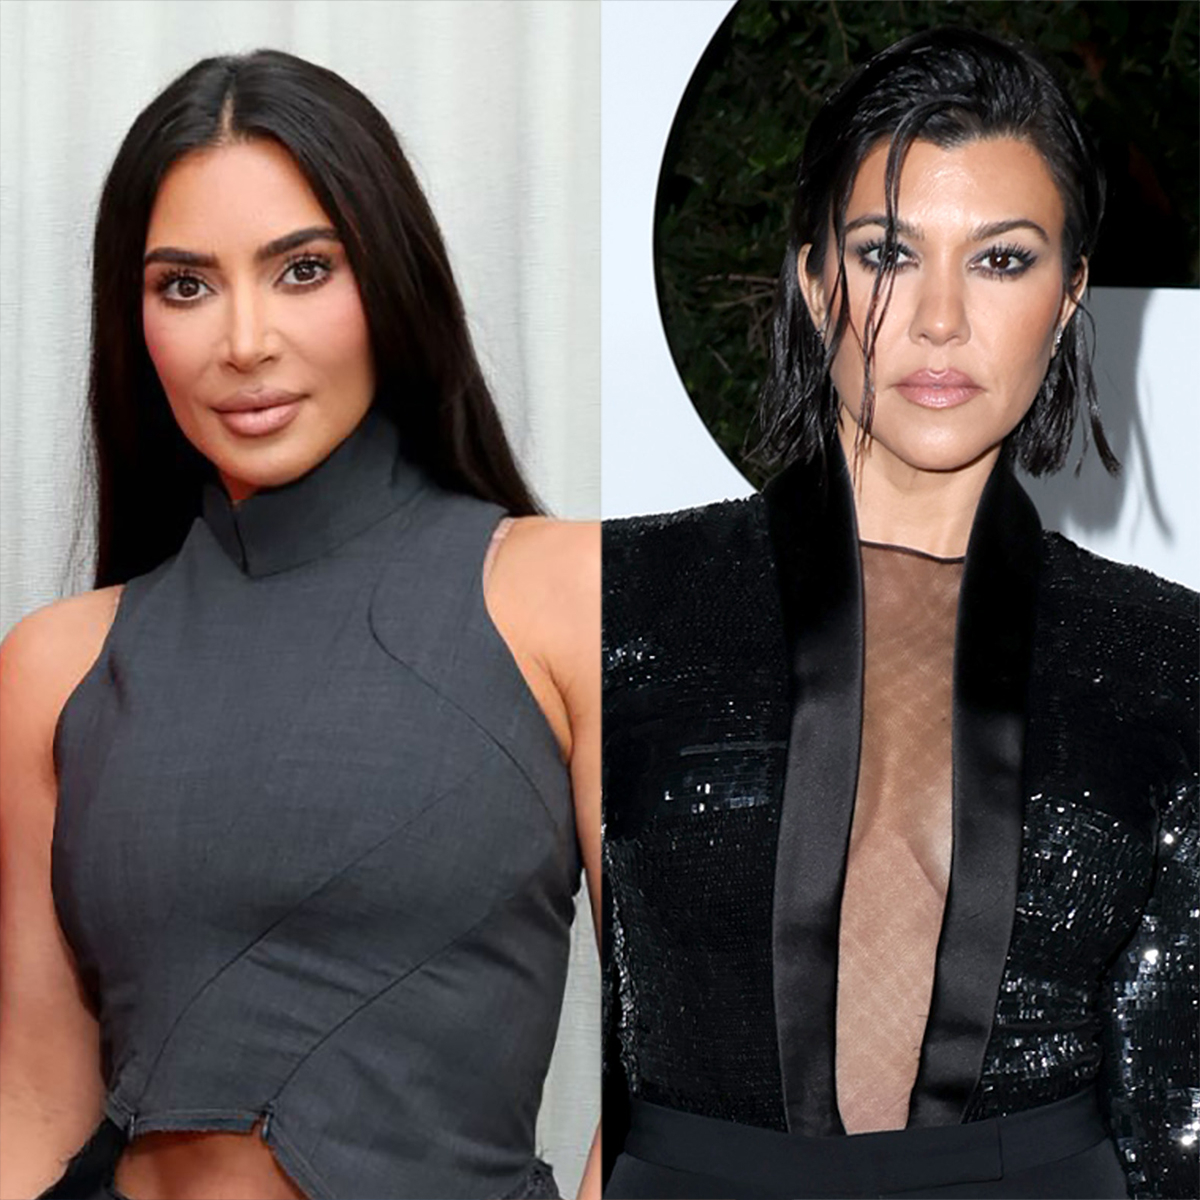 Why Kim Kardashian Is Feuding With “Diva” Kourtney Kardashian